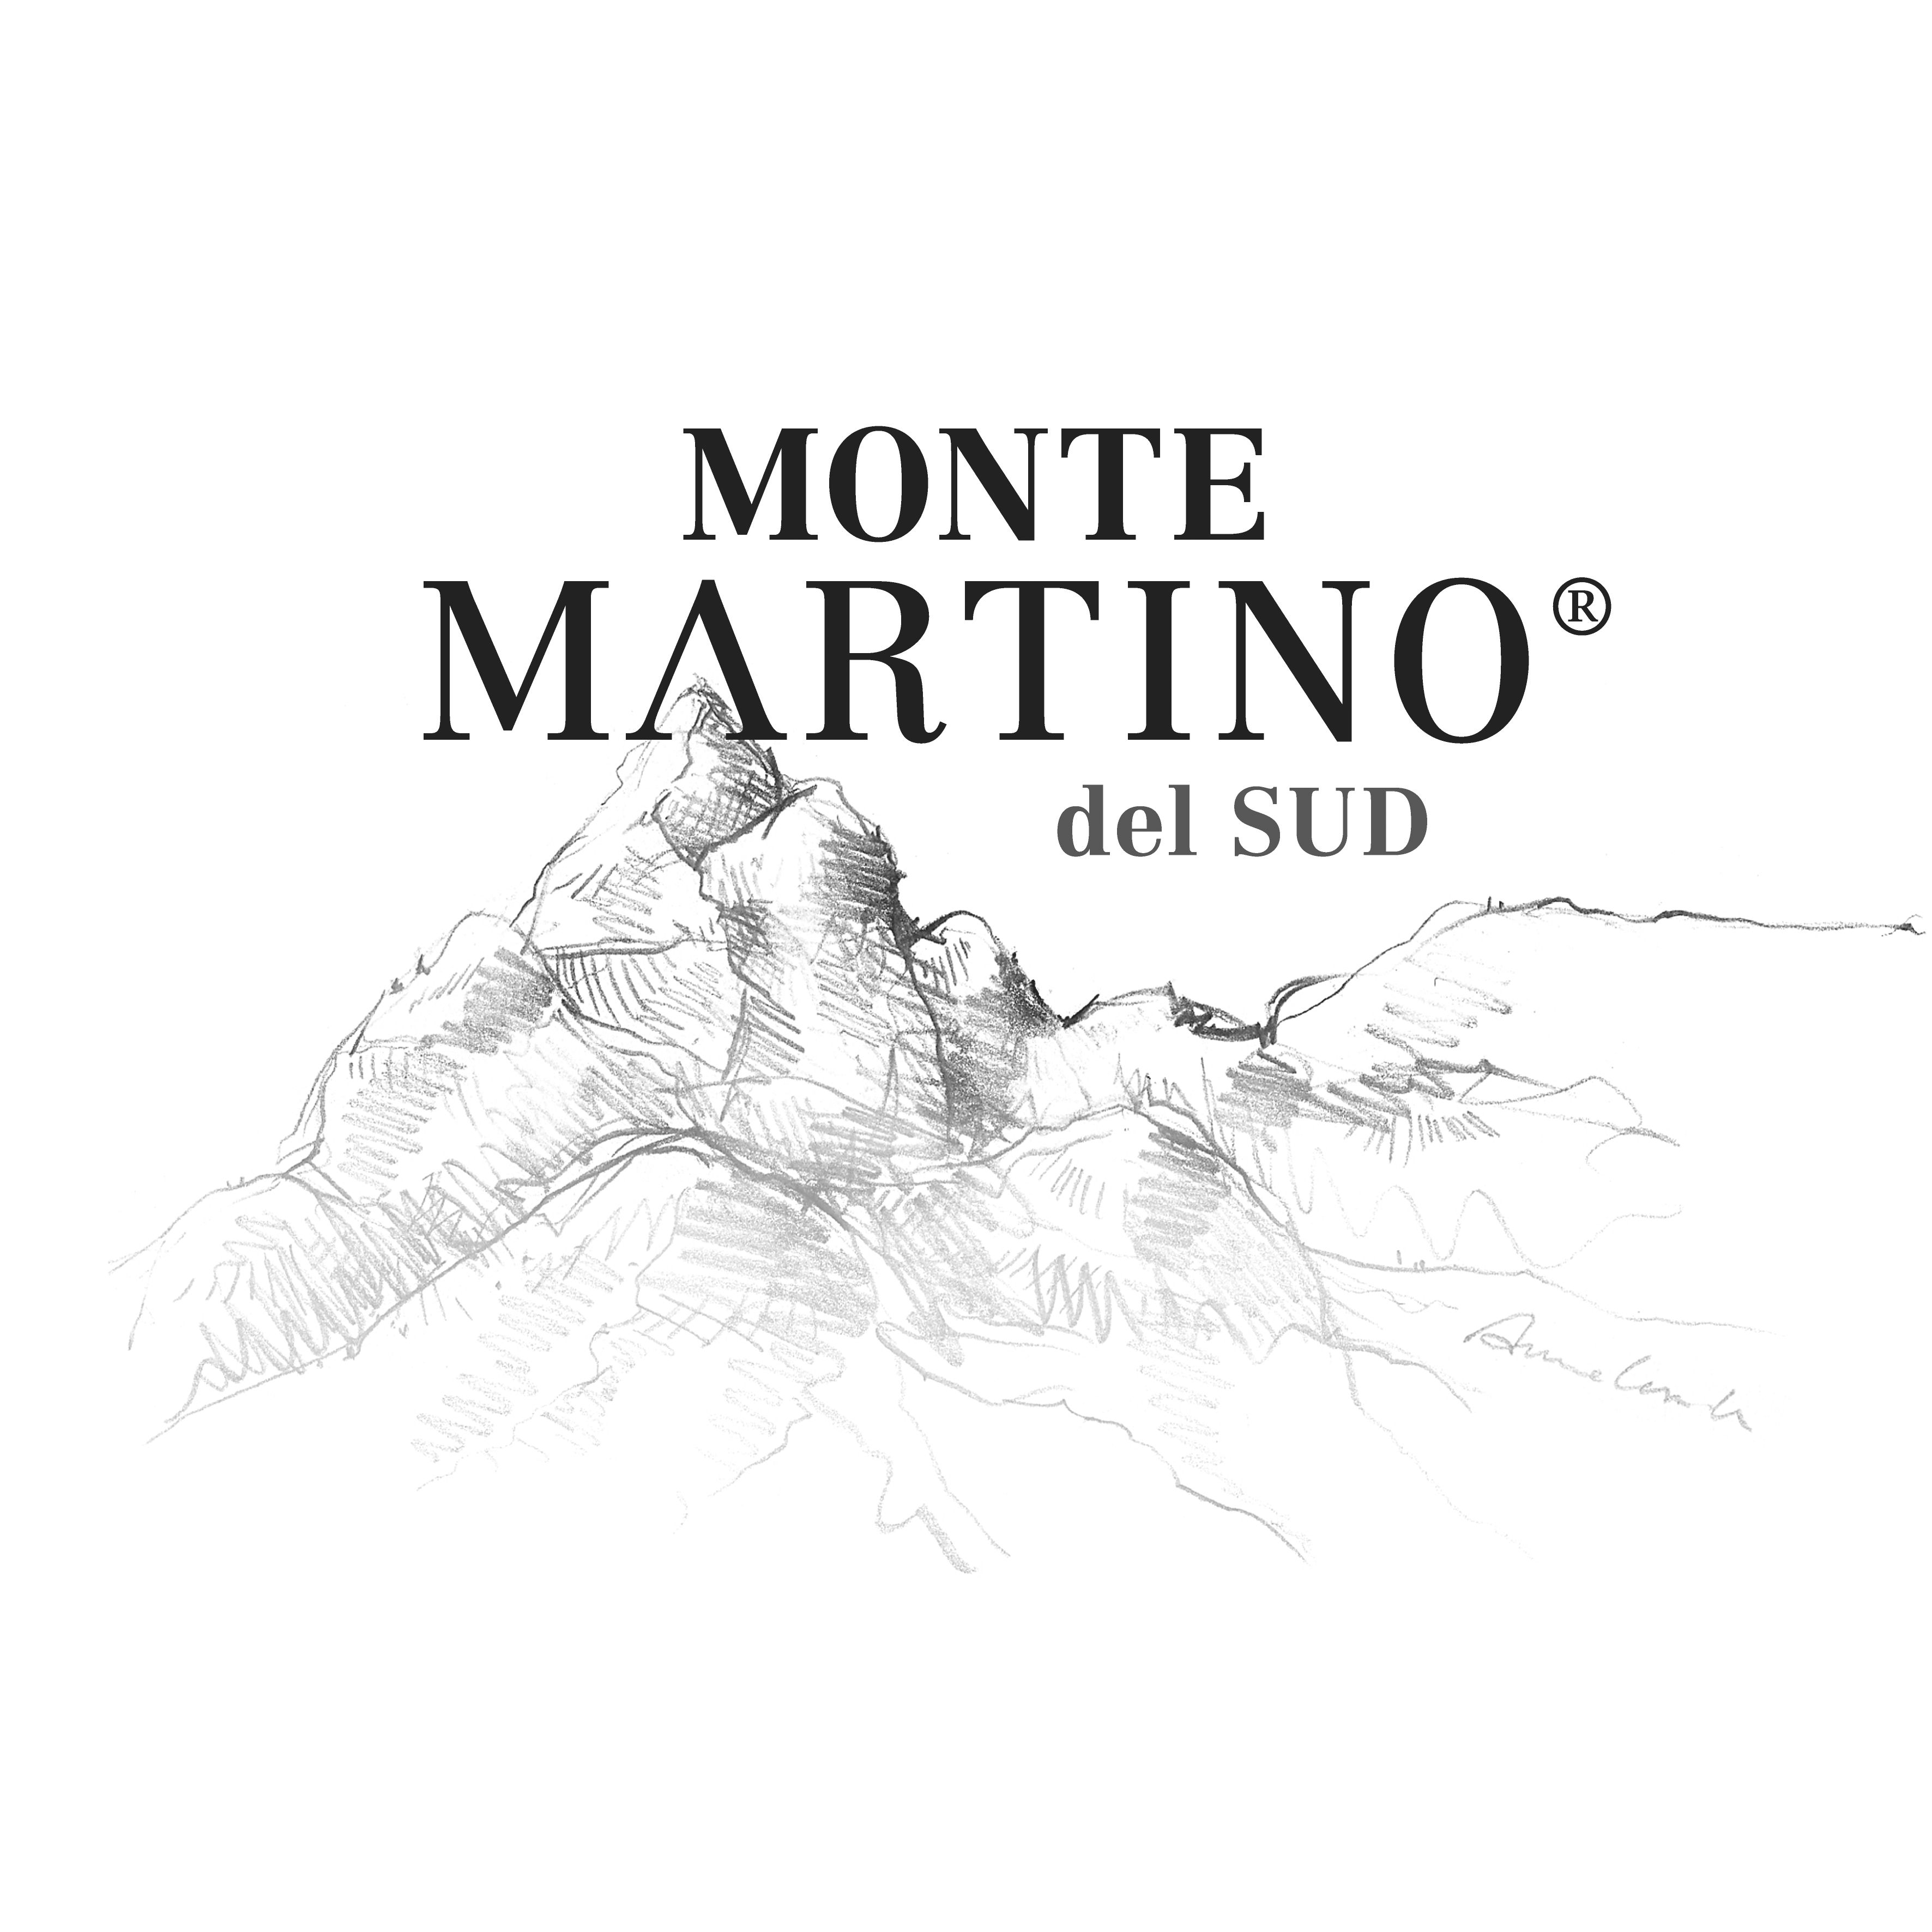 MONTE MARTINO